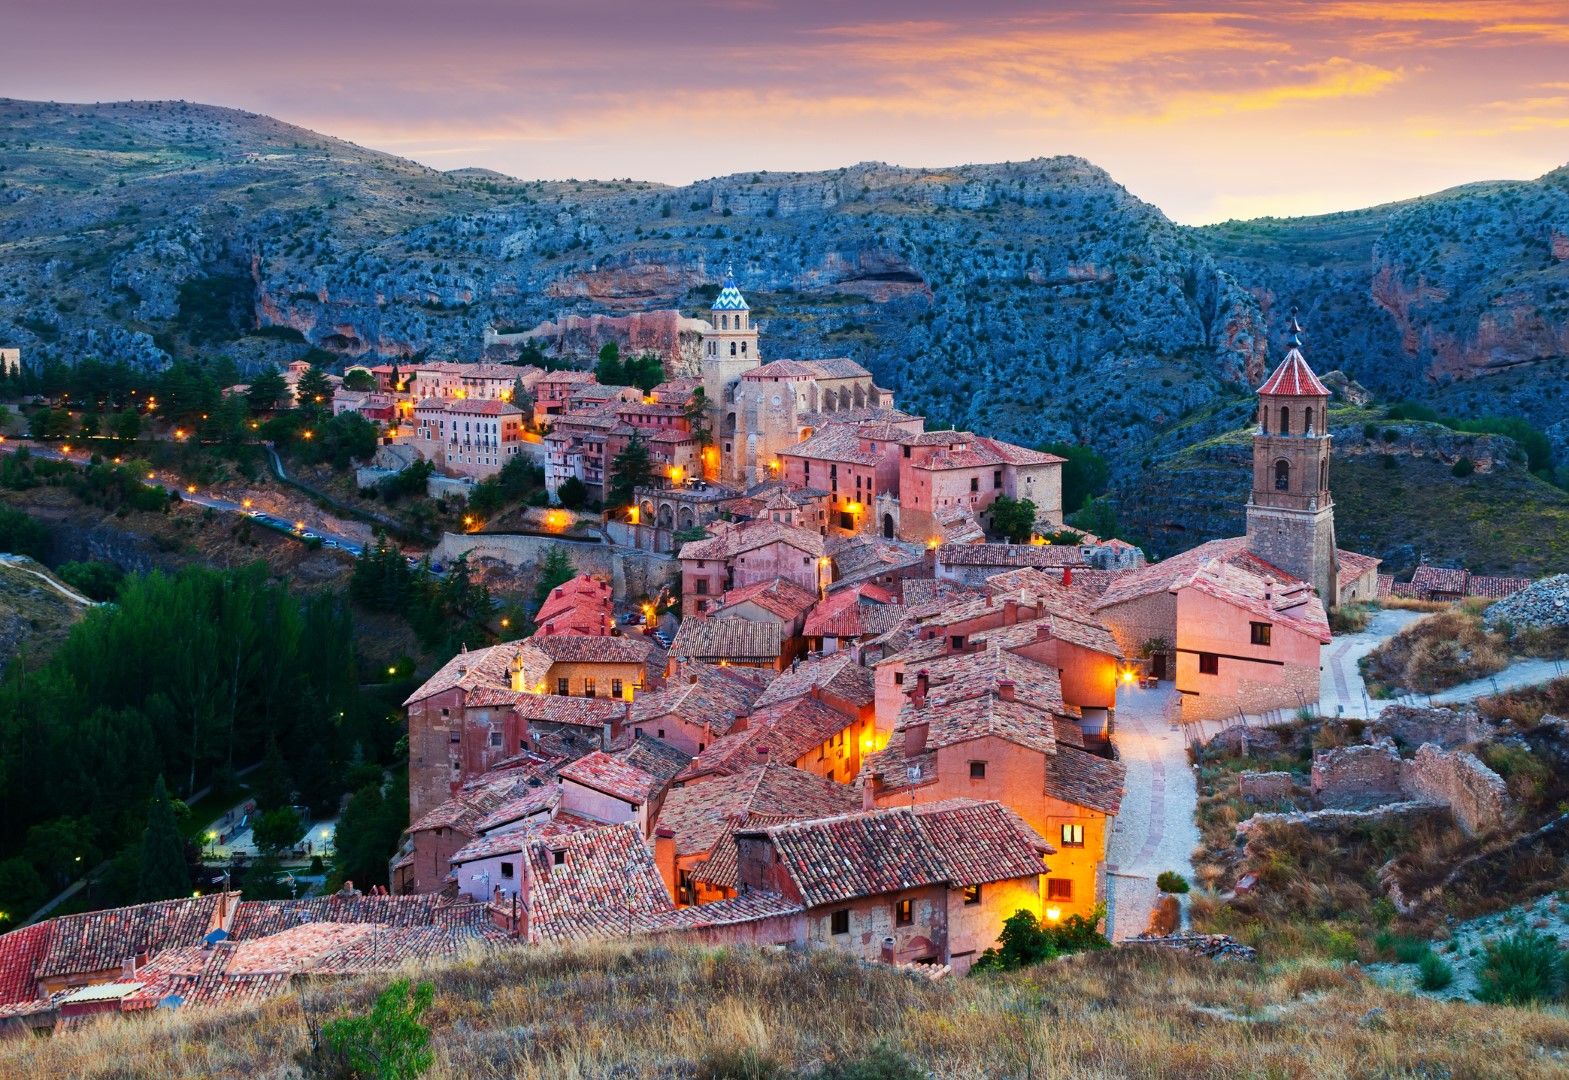 Албарасин през 2018 г, е определен за най-красивото градче в Испания